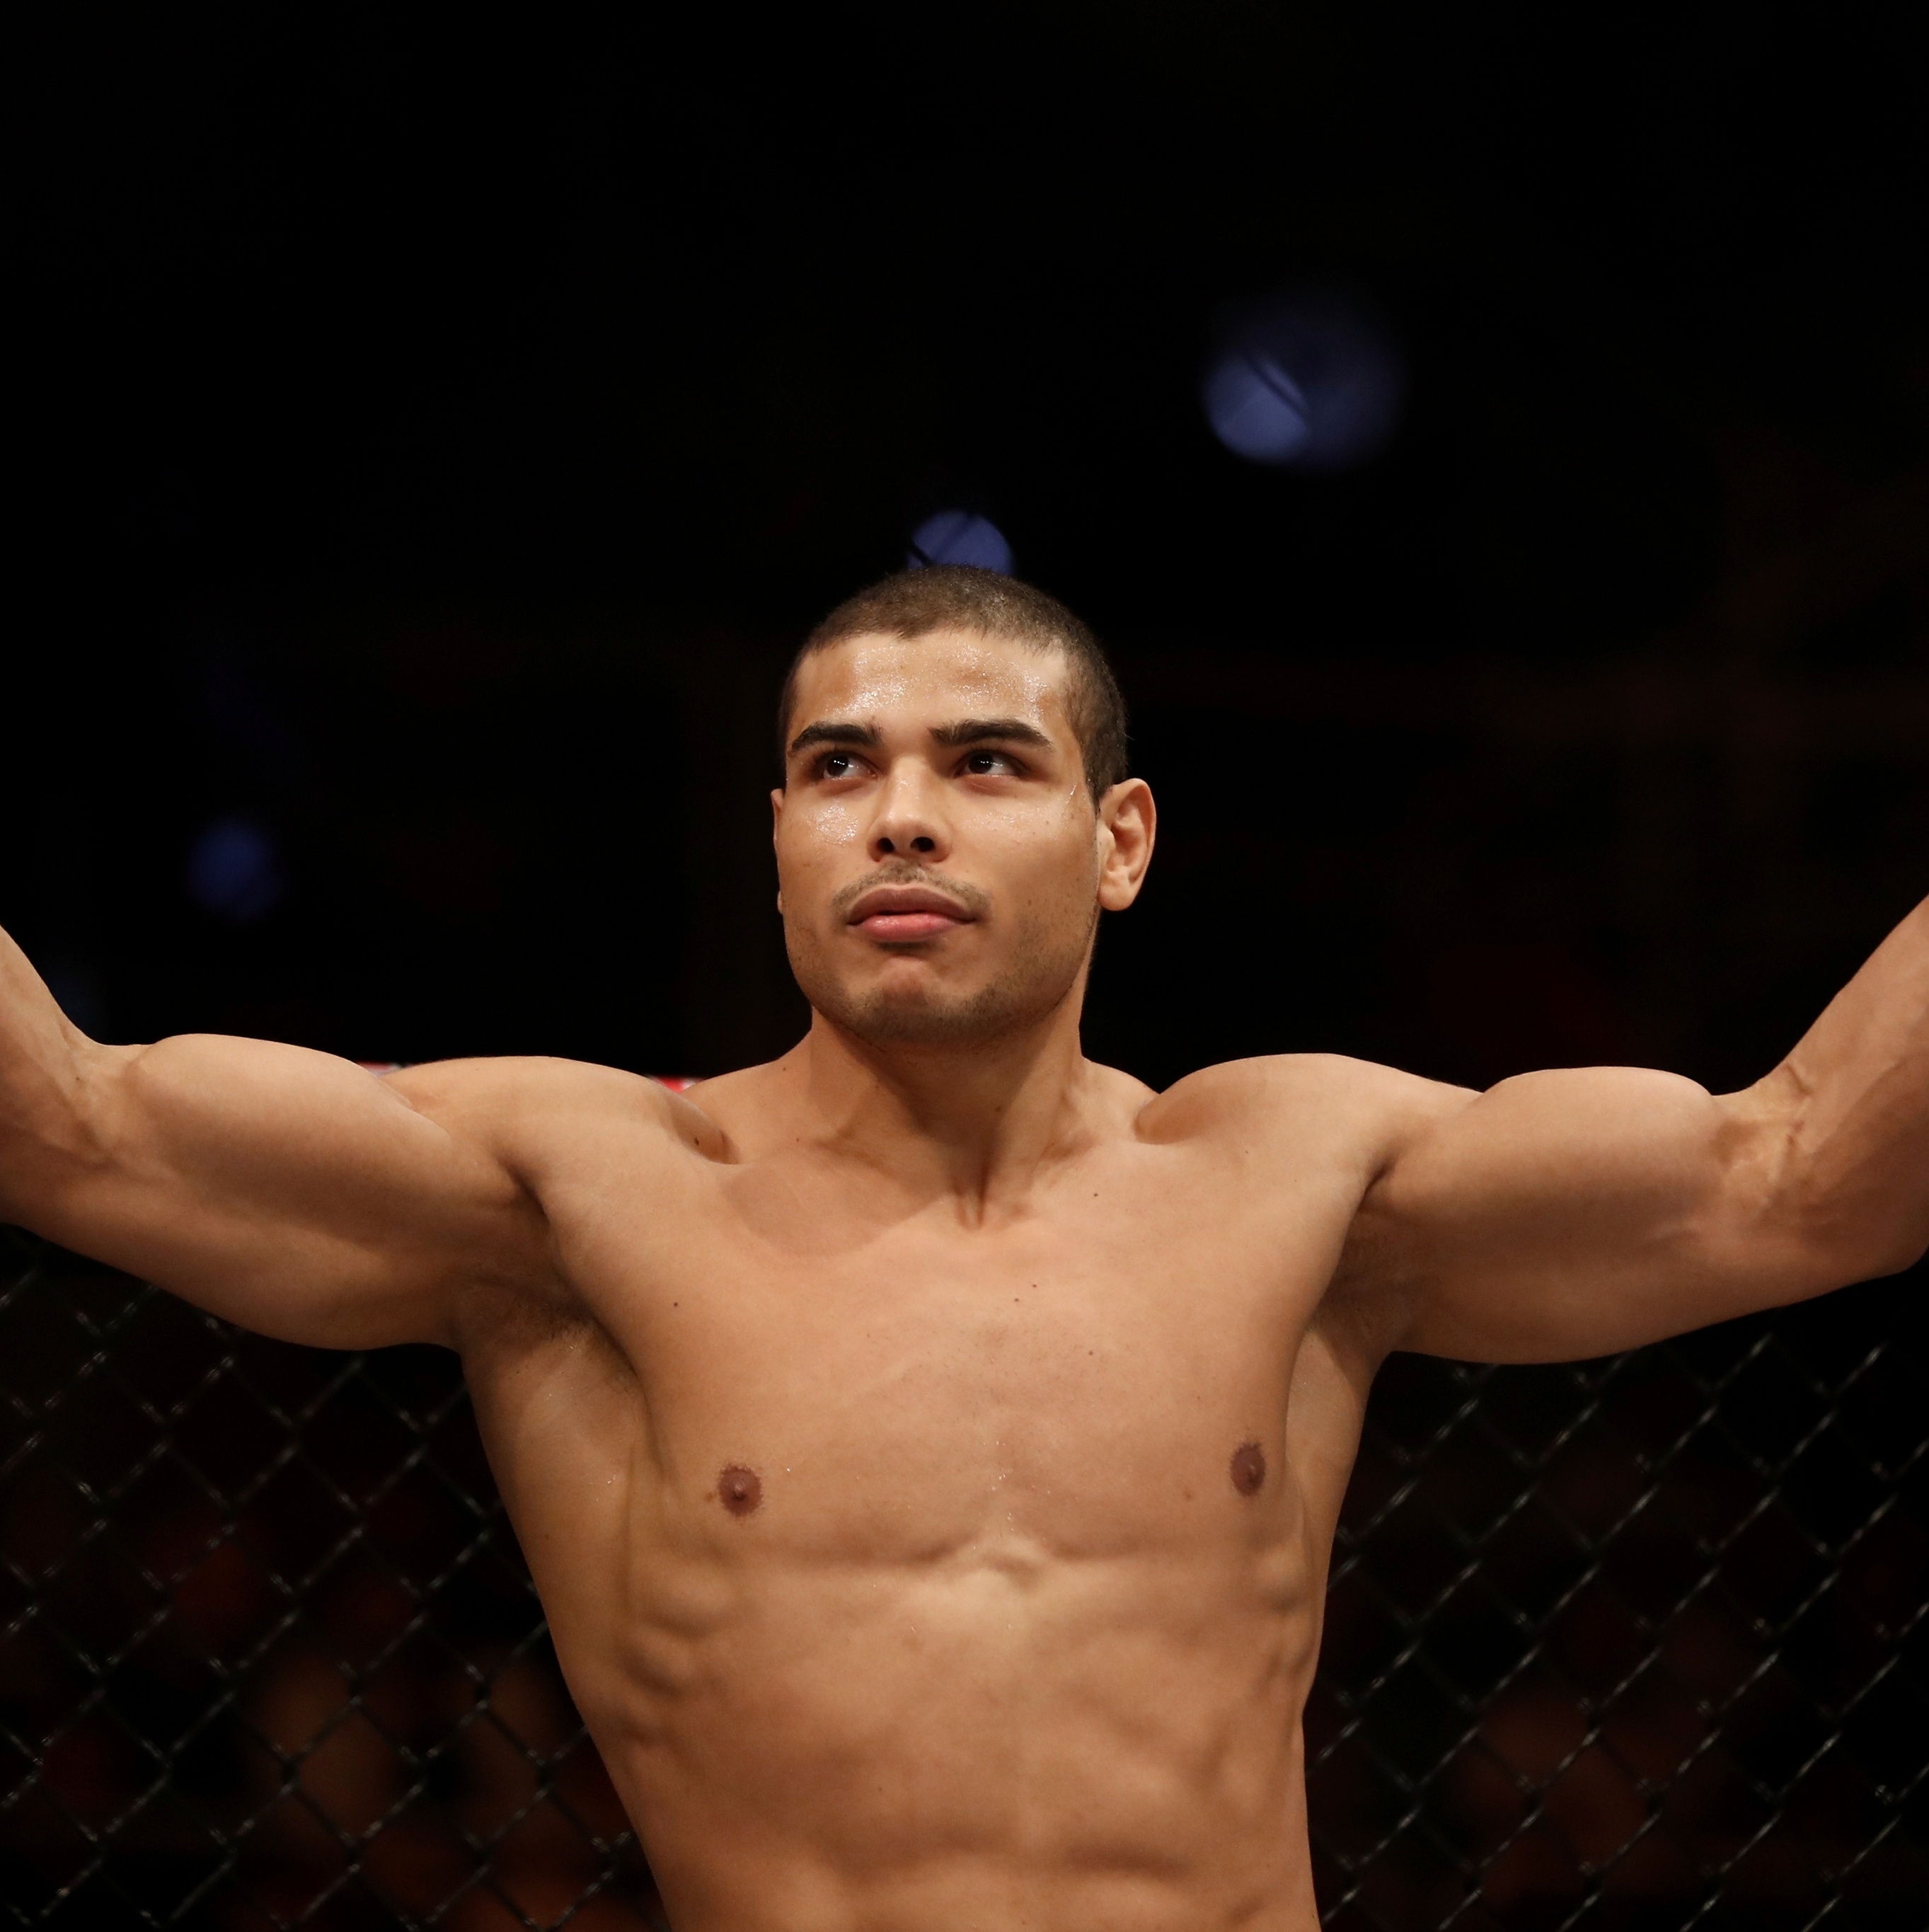 Perto' do UFC, lutador do as é destaque no Brasileiro de Luta Livre